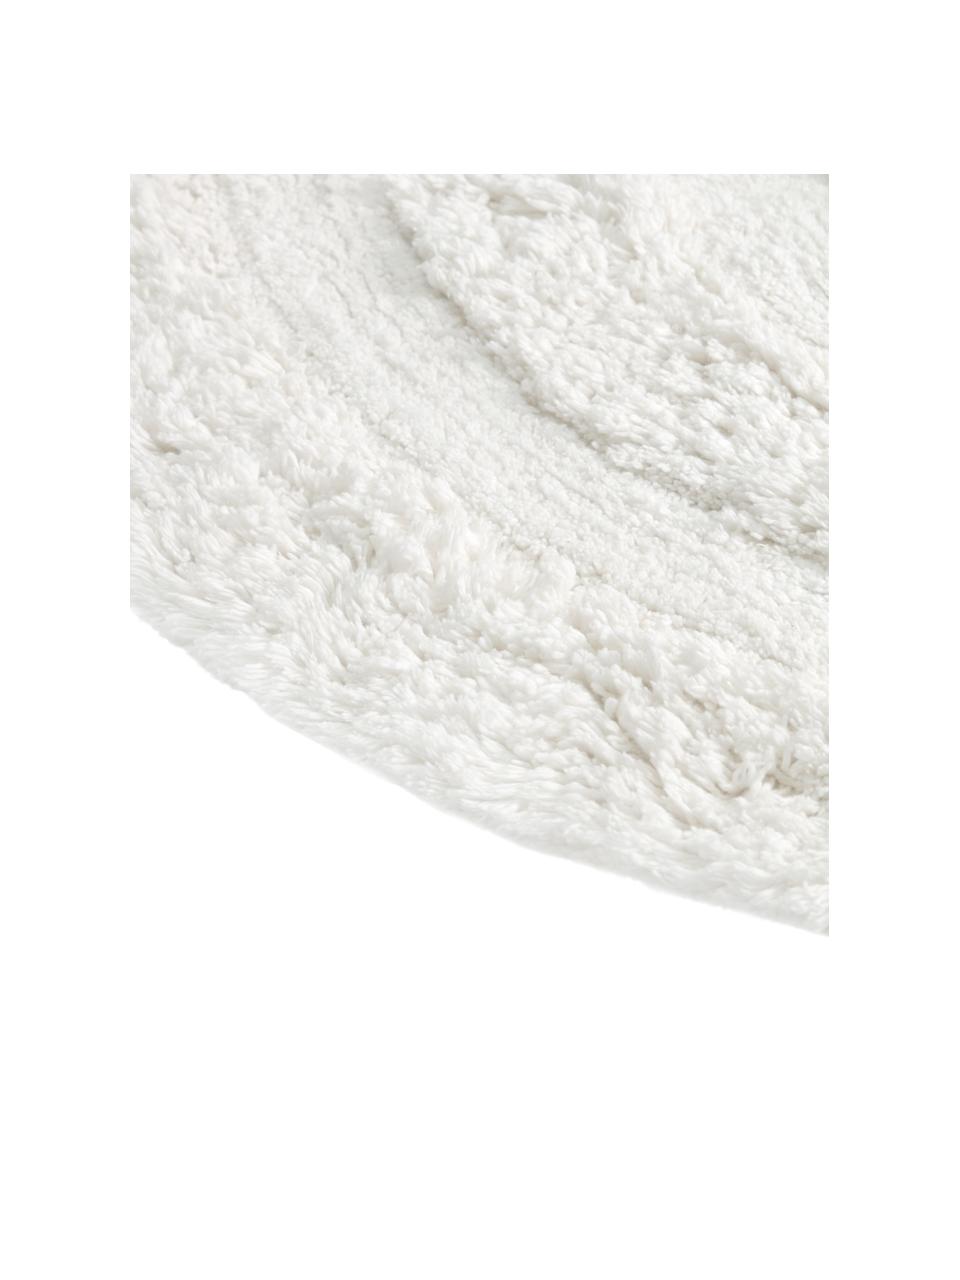 Tappeto rotondo con motivo a rilievo Eligia, 100% cotone, Bianco, Ø 120 cm (taglia S)